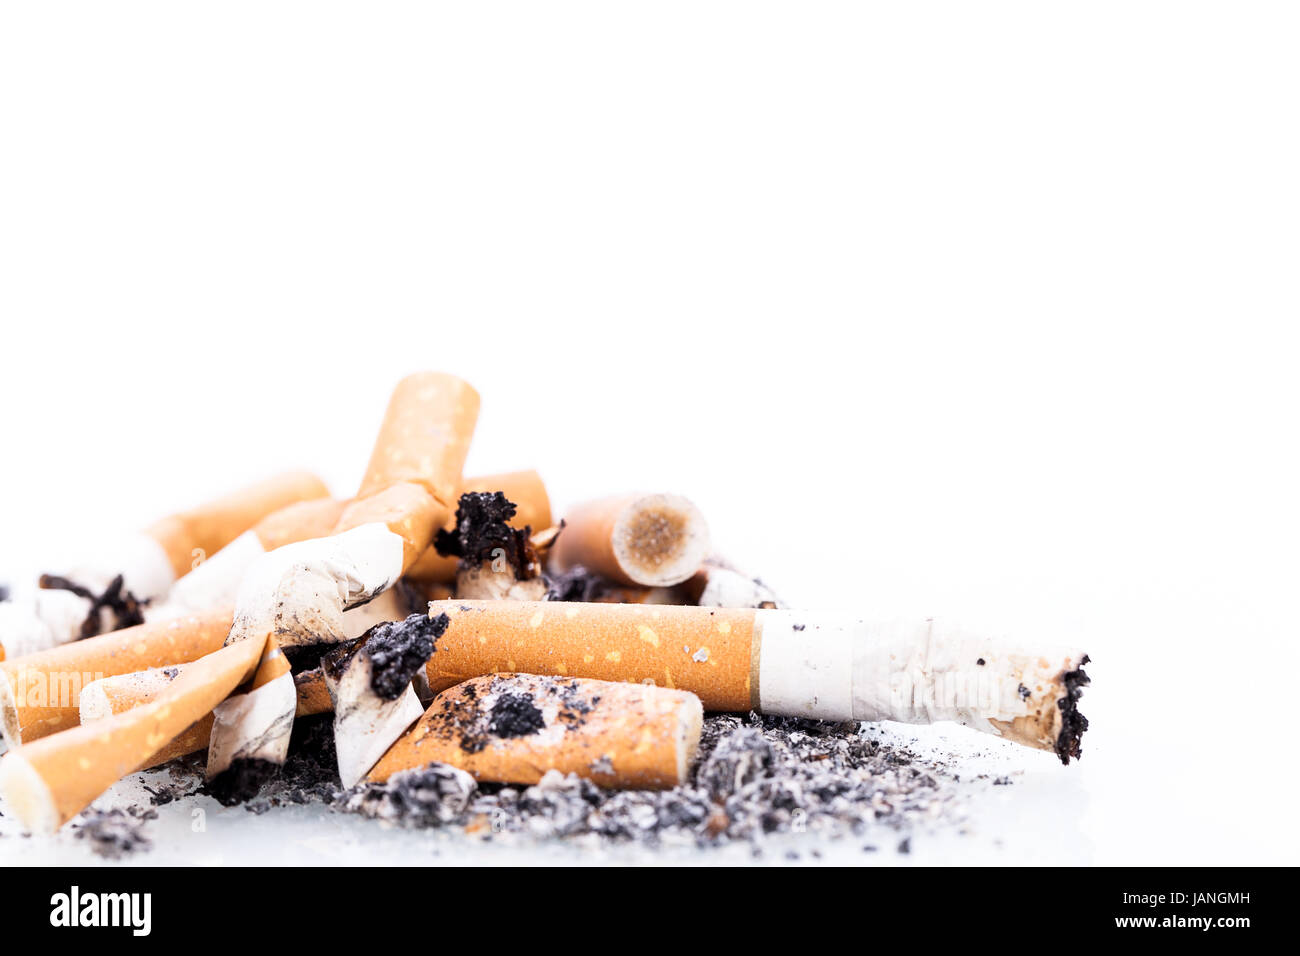 Detalle zigaretten aschenbecher mit asche isoliert aufnahme gesundheit regalo Foto de stock